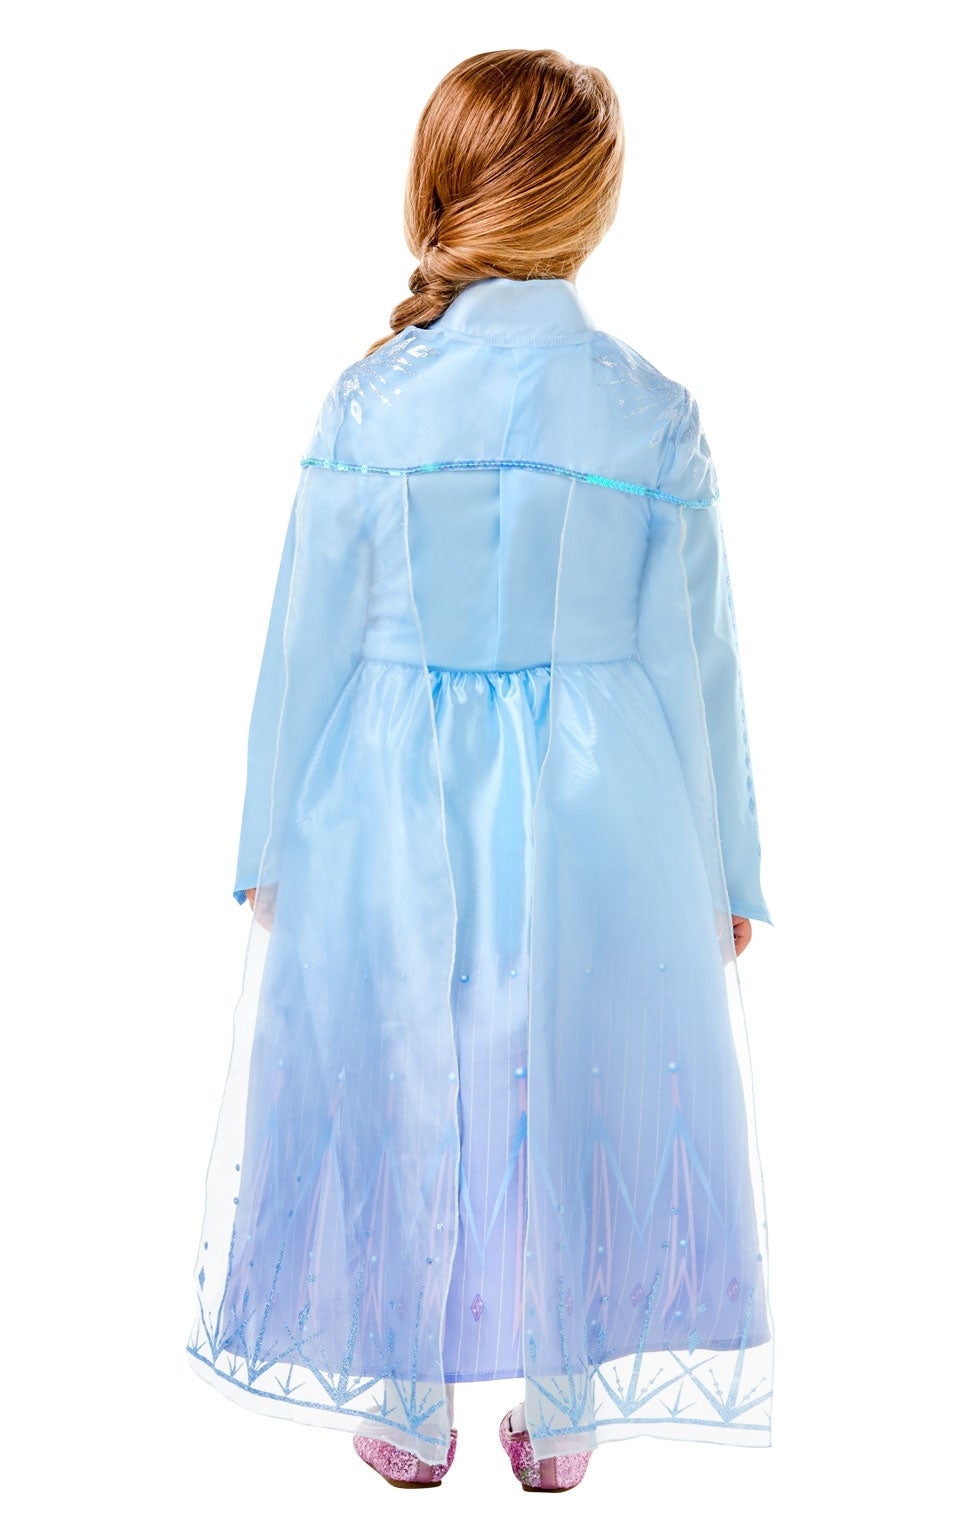 Frozen 2 New Elsa Travel Dress Deluxe Costume_2